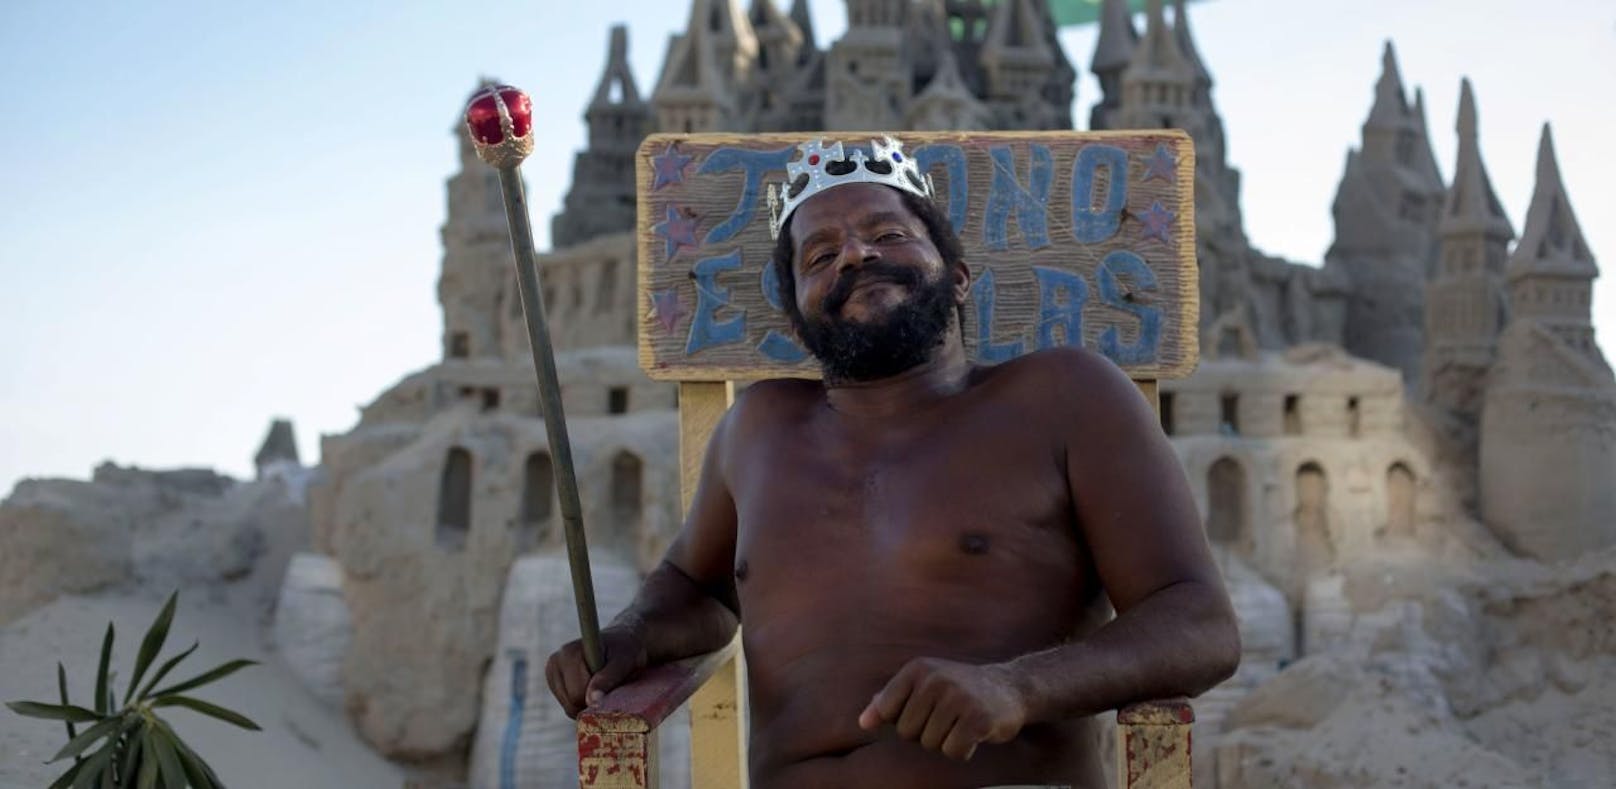 "König" lebt seit 22 Jahren in Schloss aus Sand